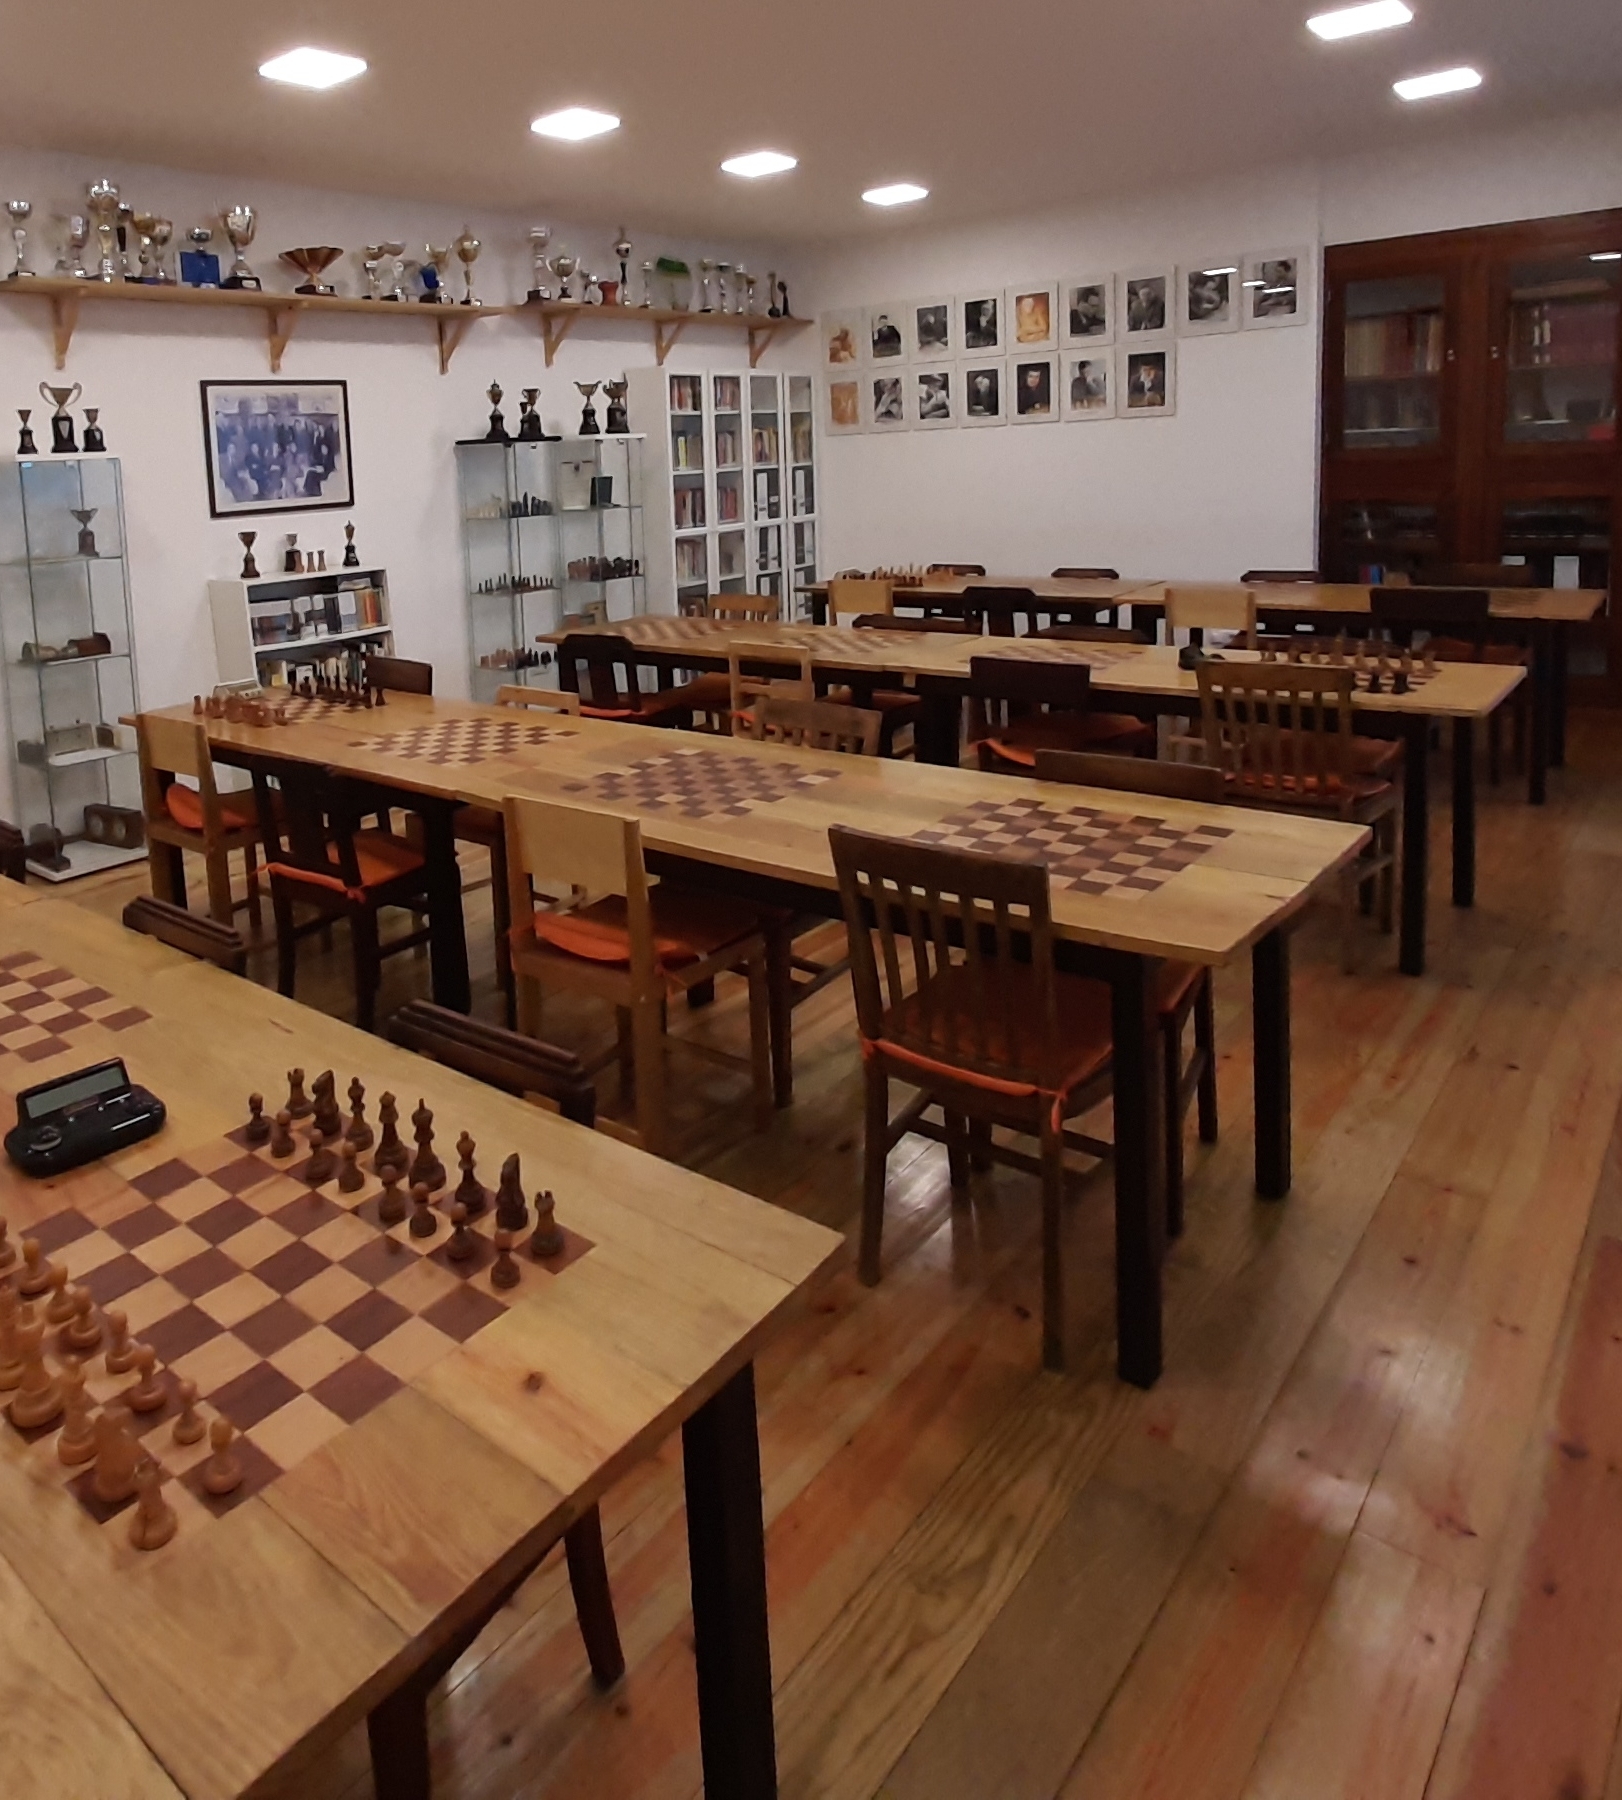 Última Divisão Chess Club - clube de xadrez 